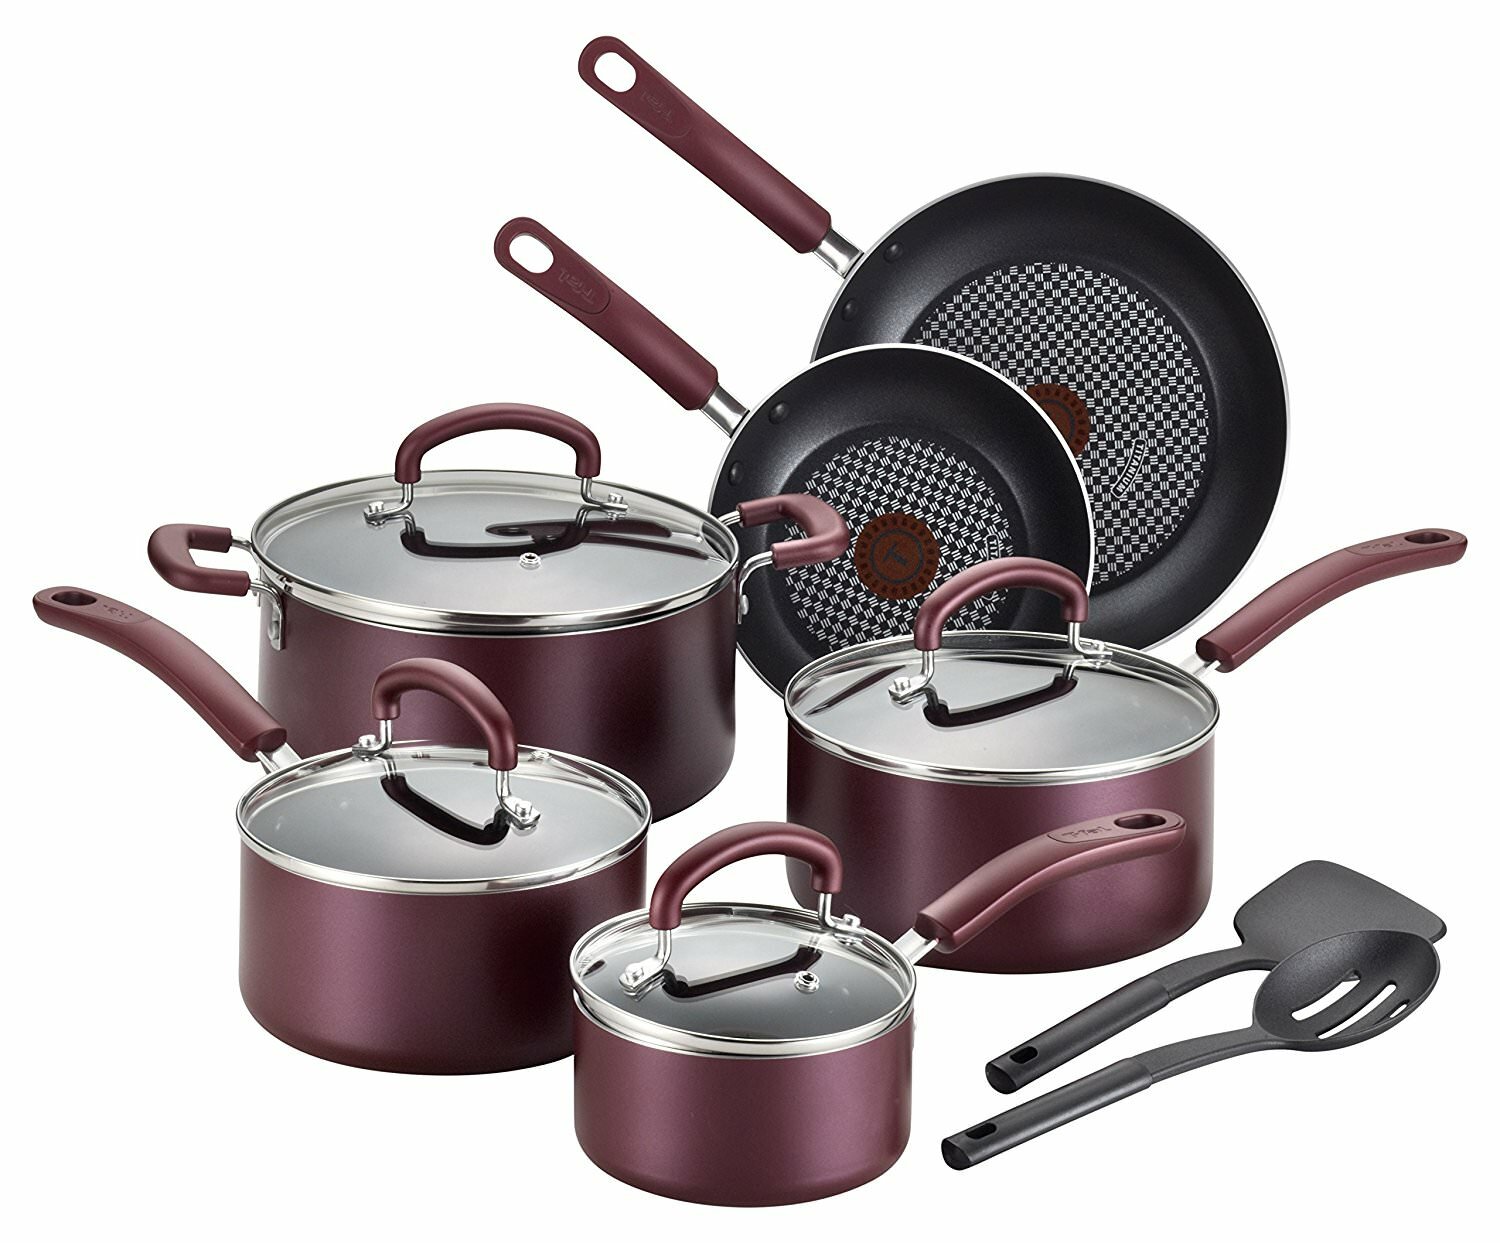 https://assets.wfcdn.com/im/87113126/compr-r85/4837/48373726/t-fal-luxe-nonstick-aluminum-cookware-set-cooking-utensils-12-piece.jpg